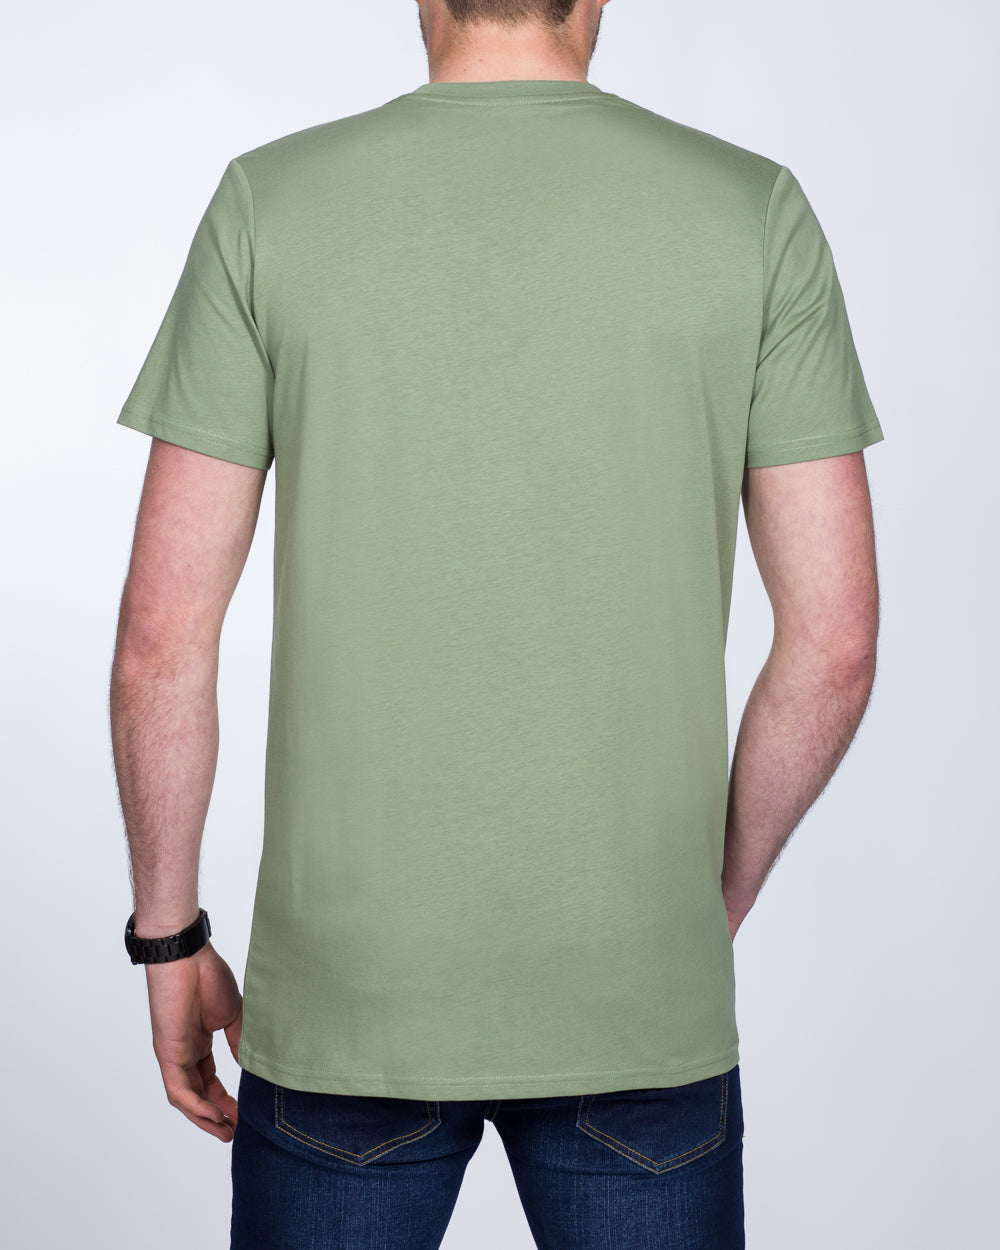 Girav Sydney Tall T-Shirt (sea green)